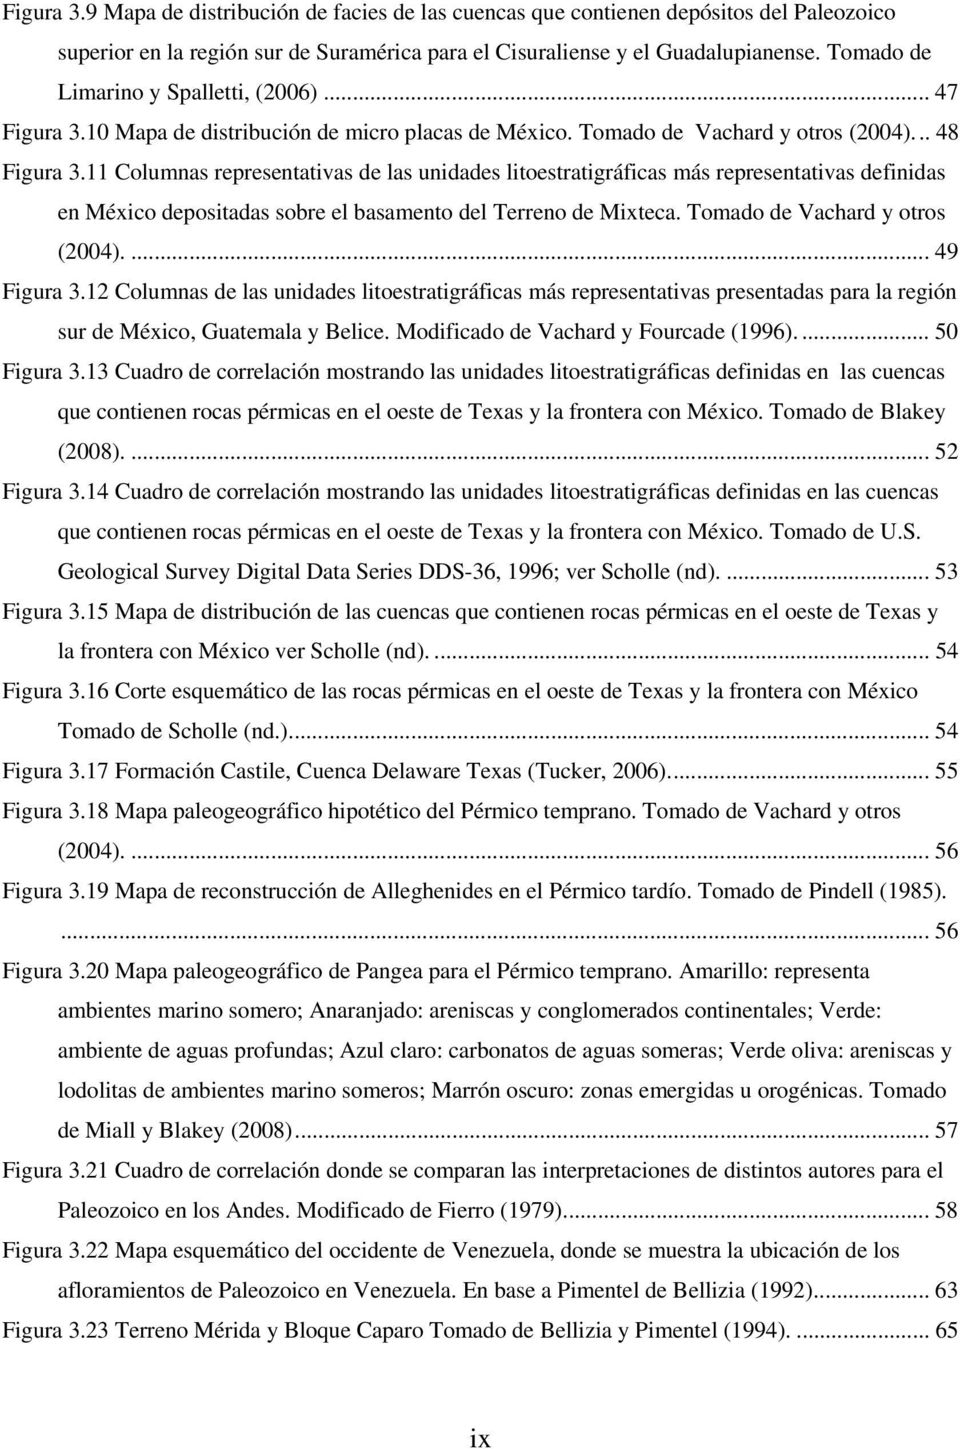 11 Columnas representativas de las unidades litoestratigráficas más representativas definidas en México depositadas sobre el basamento del Terreno de Mixteca. Tomado de Vachard y otros (2004).